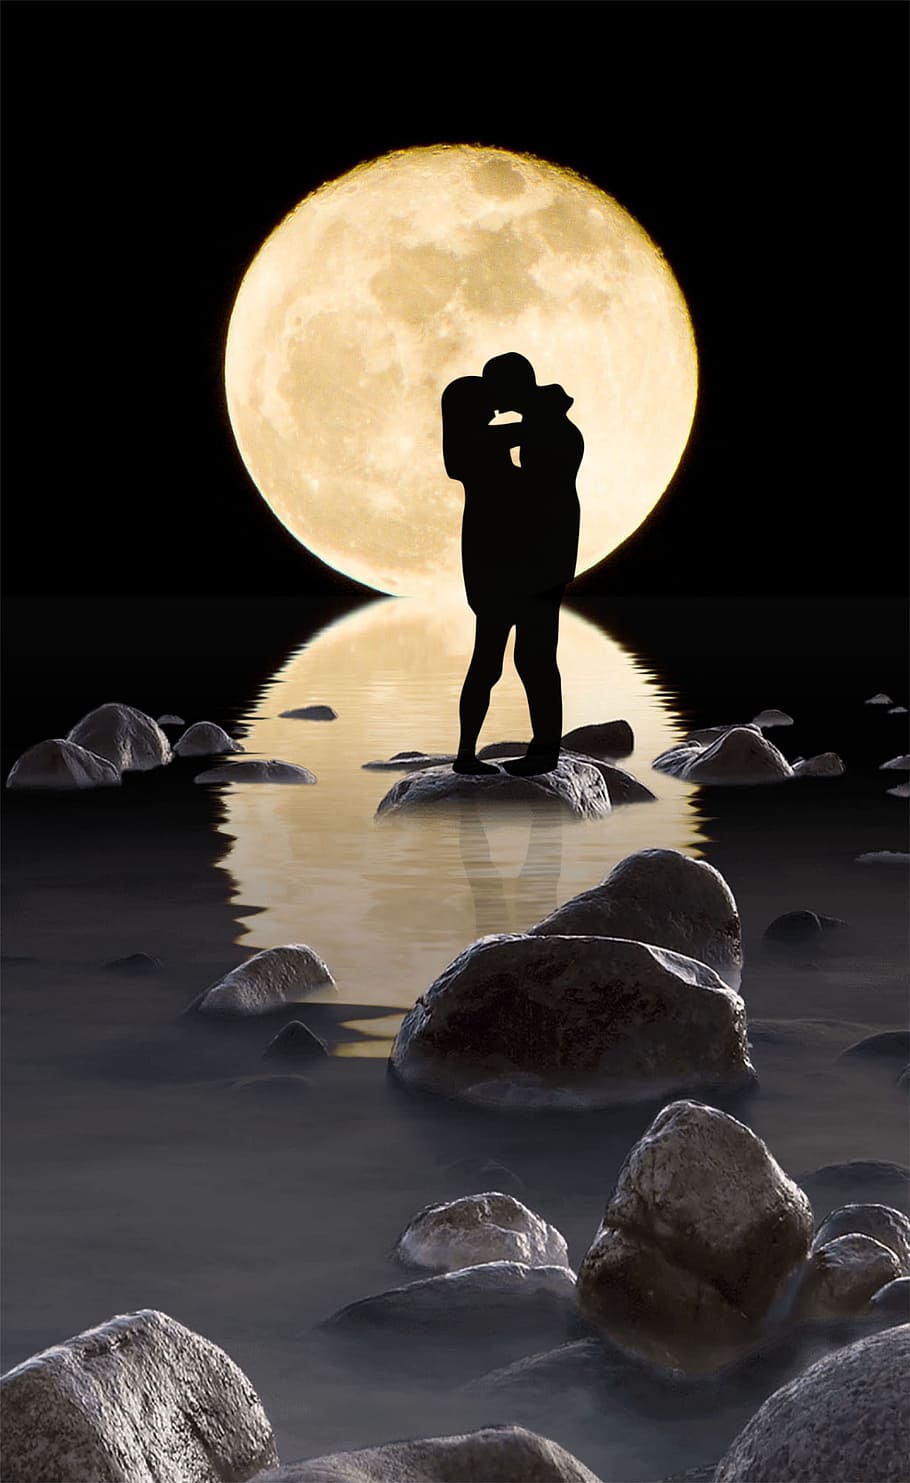 シルエット写真 男 女 月 カップル キス 反射 ロマンチック 水 背景 Pxfuel